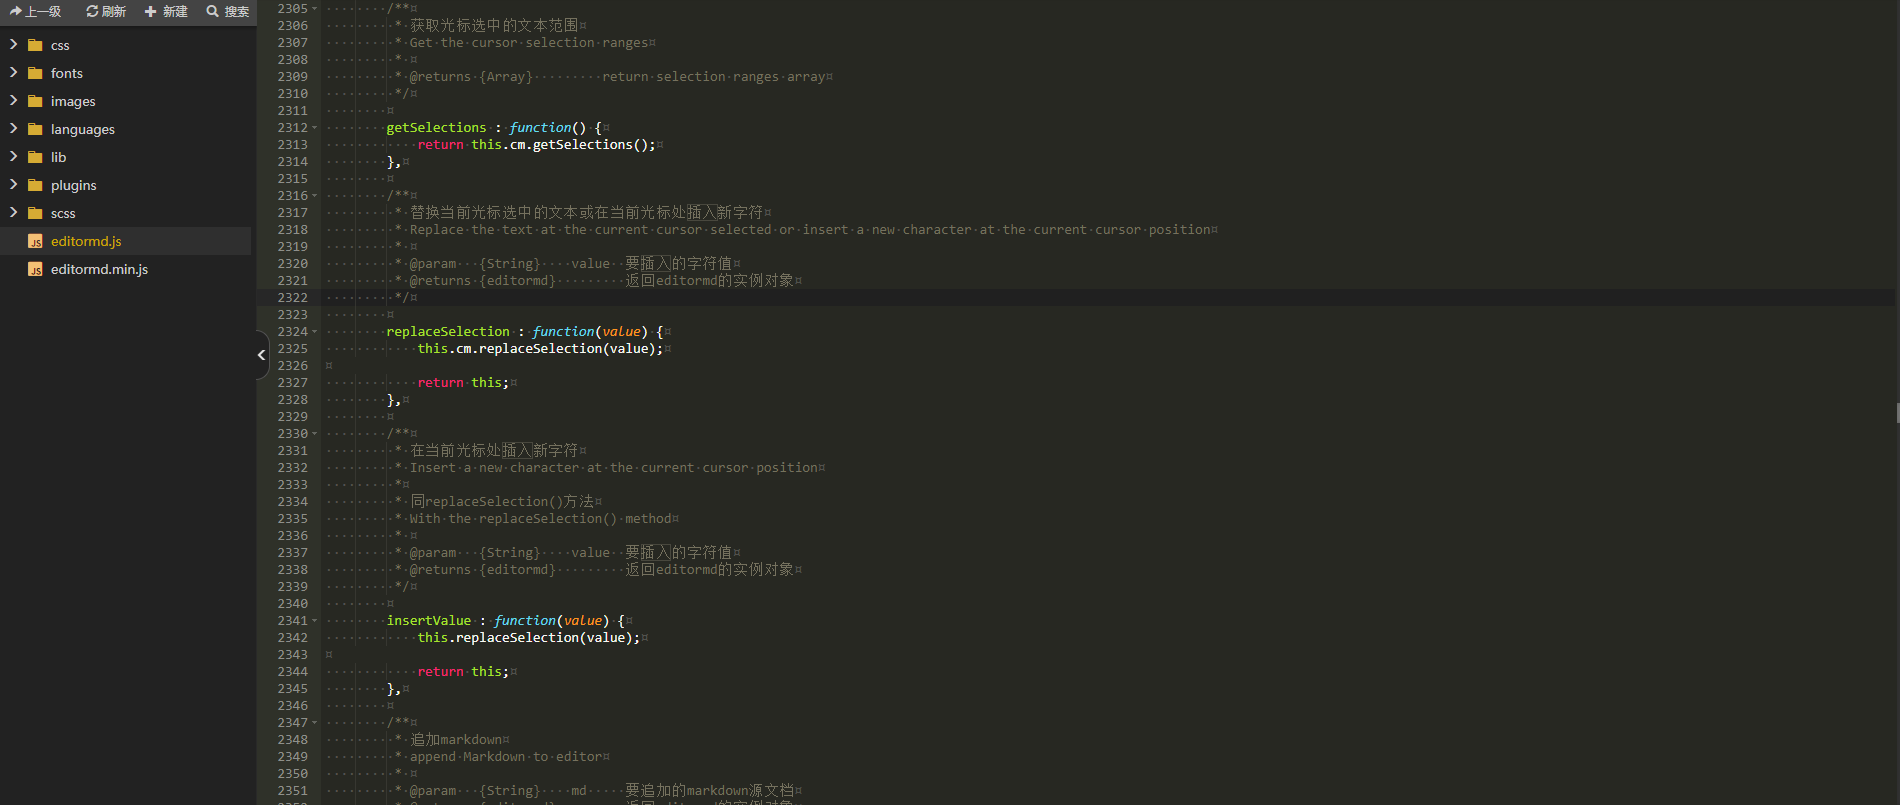 解决Kratos-pjax主题使用GutenbergMD编辑器无法插入表情包和短代码问题